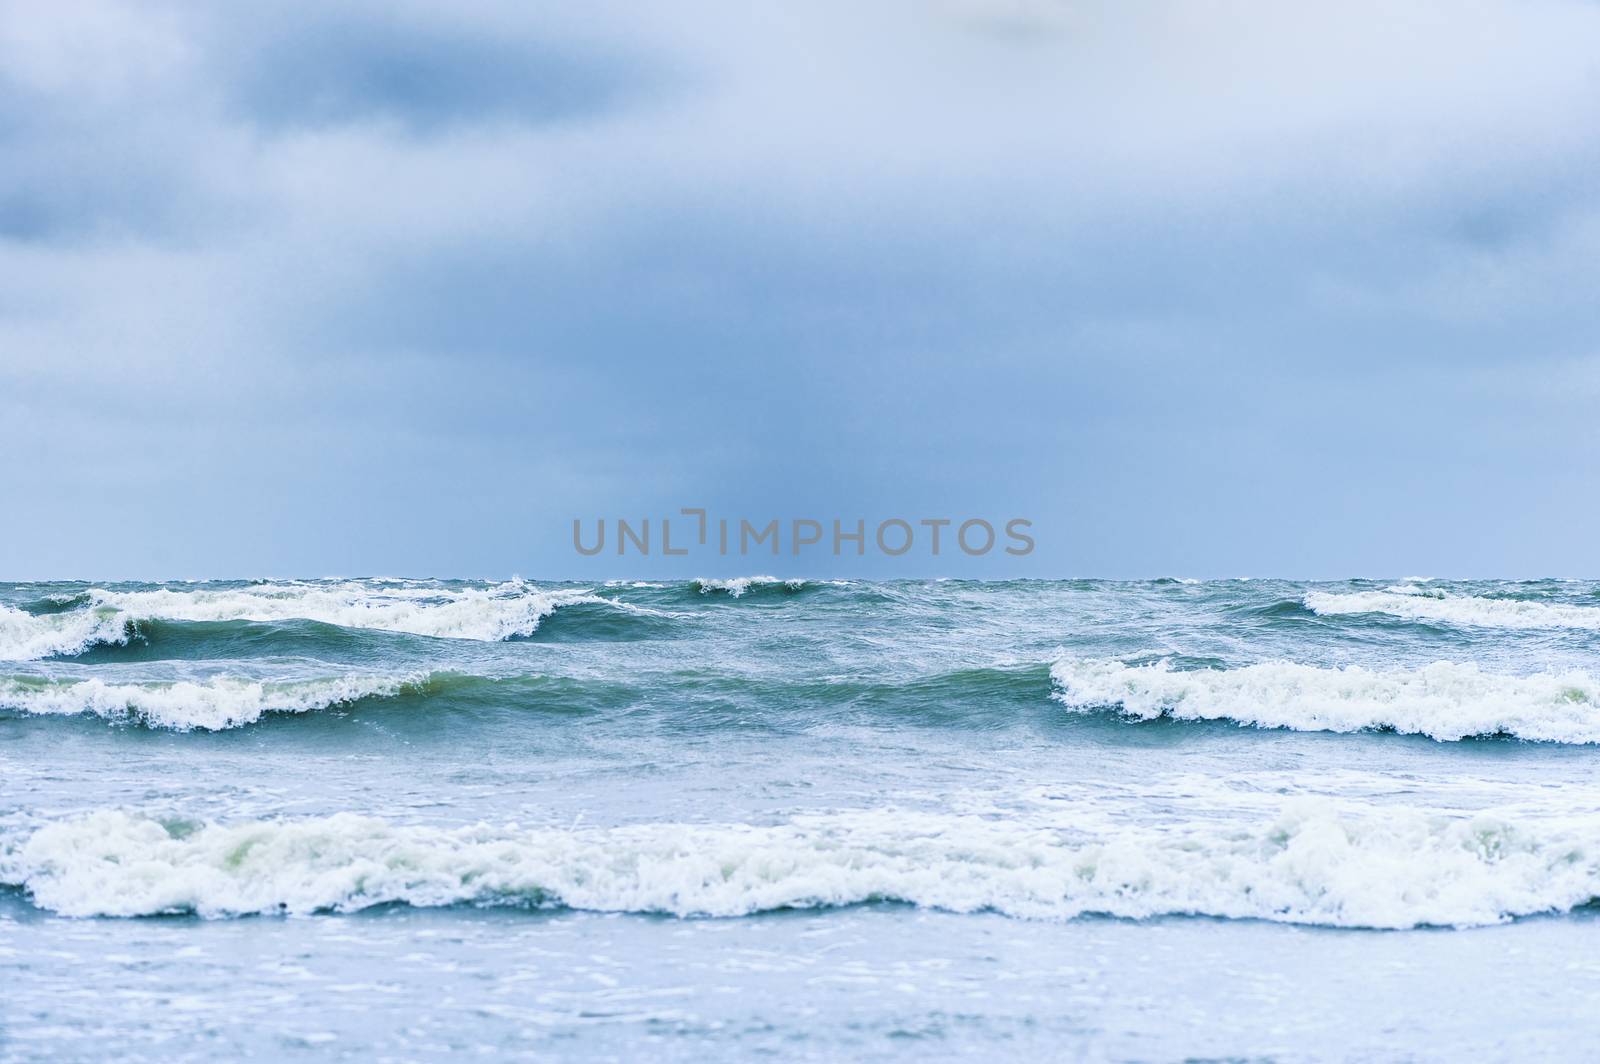 Ocean waves by styf22